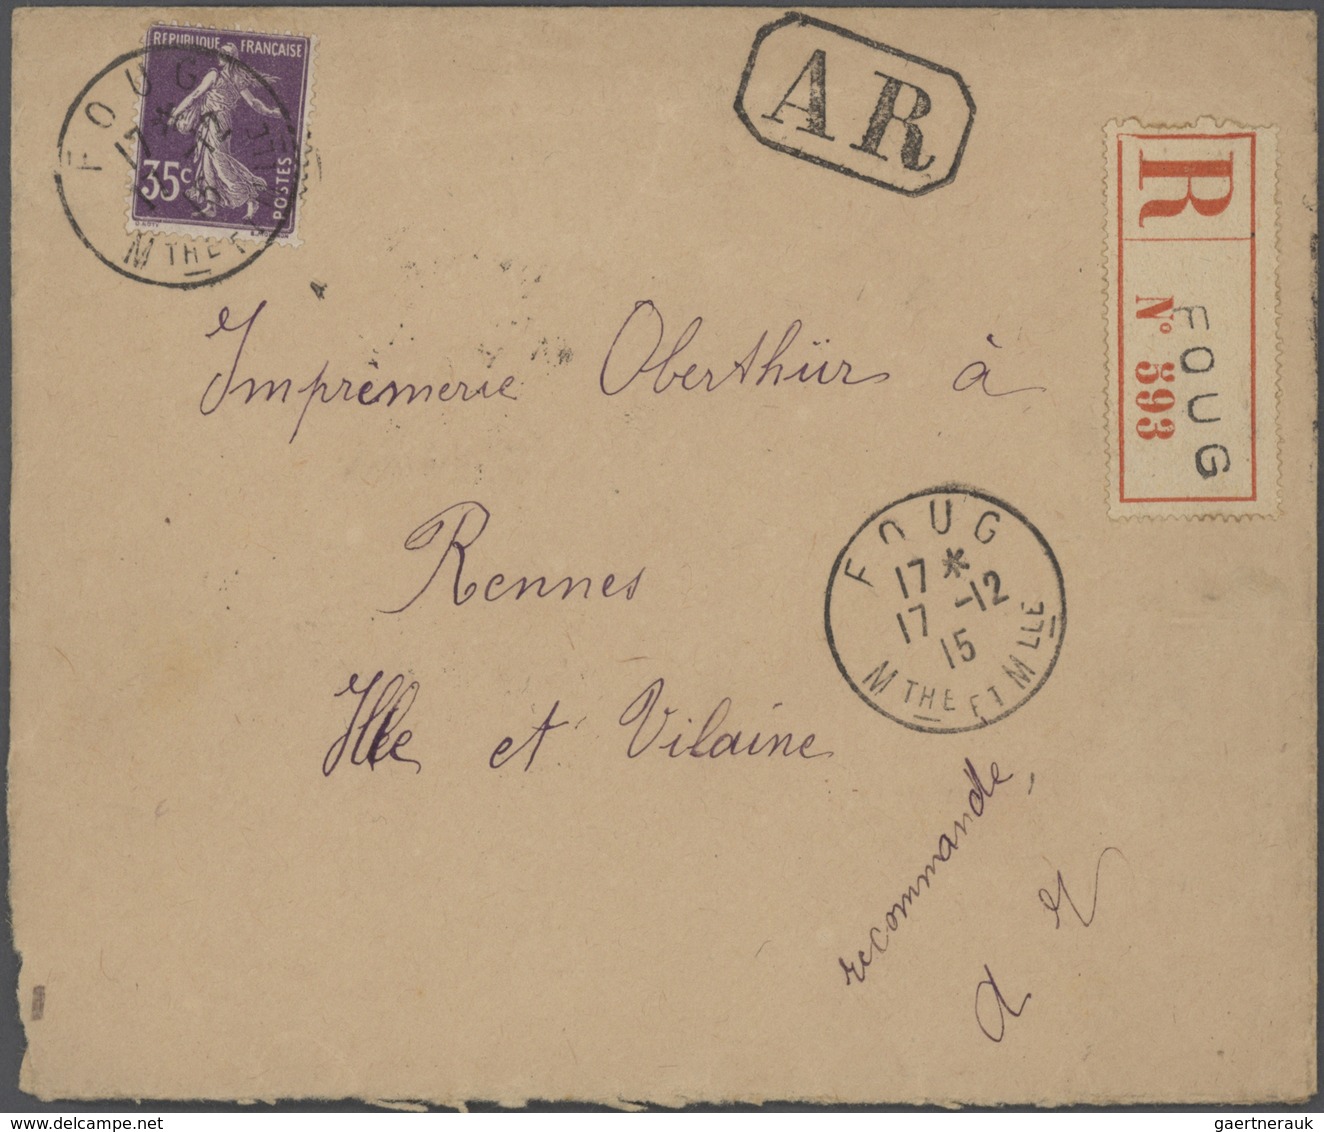 Frankreich: 1910/50 (ca.), Sammlung von ca. 335 Einschreibe-Briefen, sehr spezialisiert mit vielen T